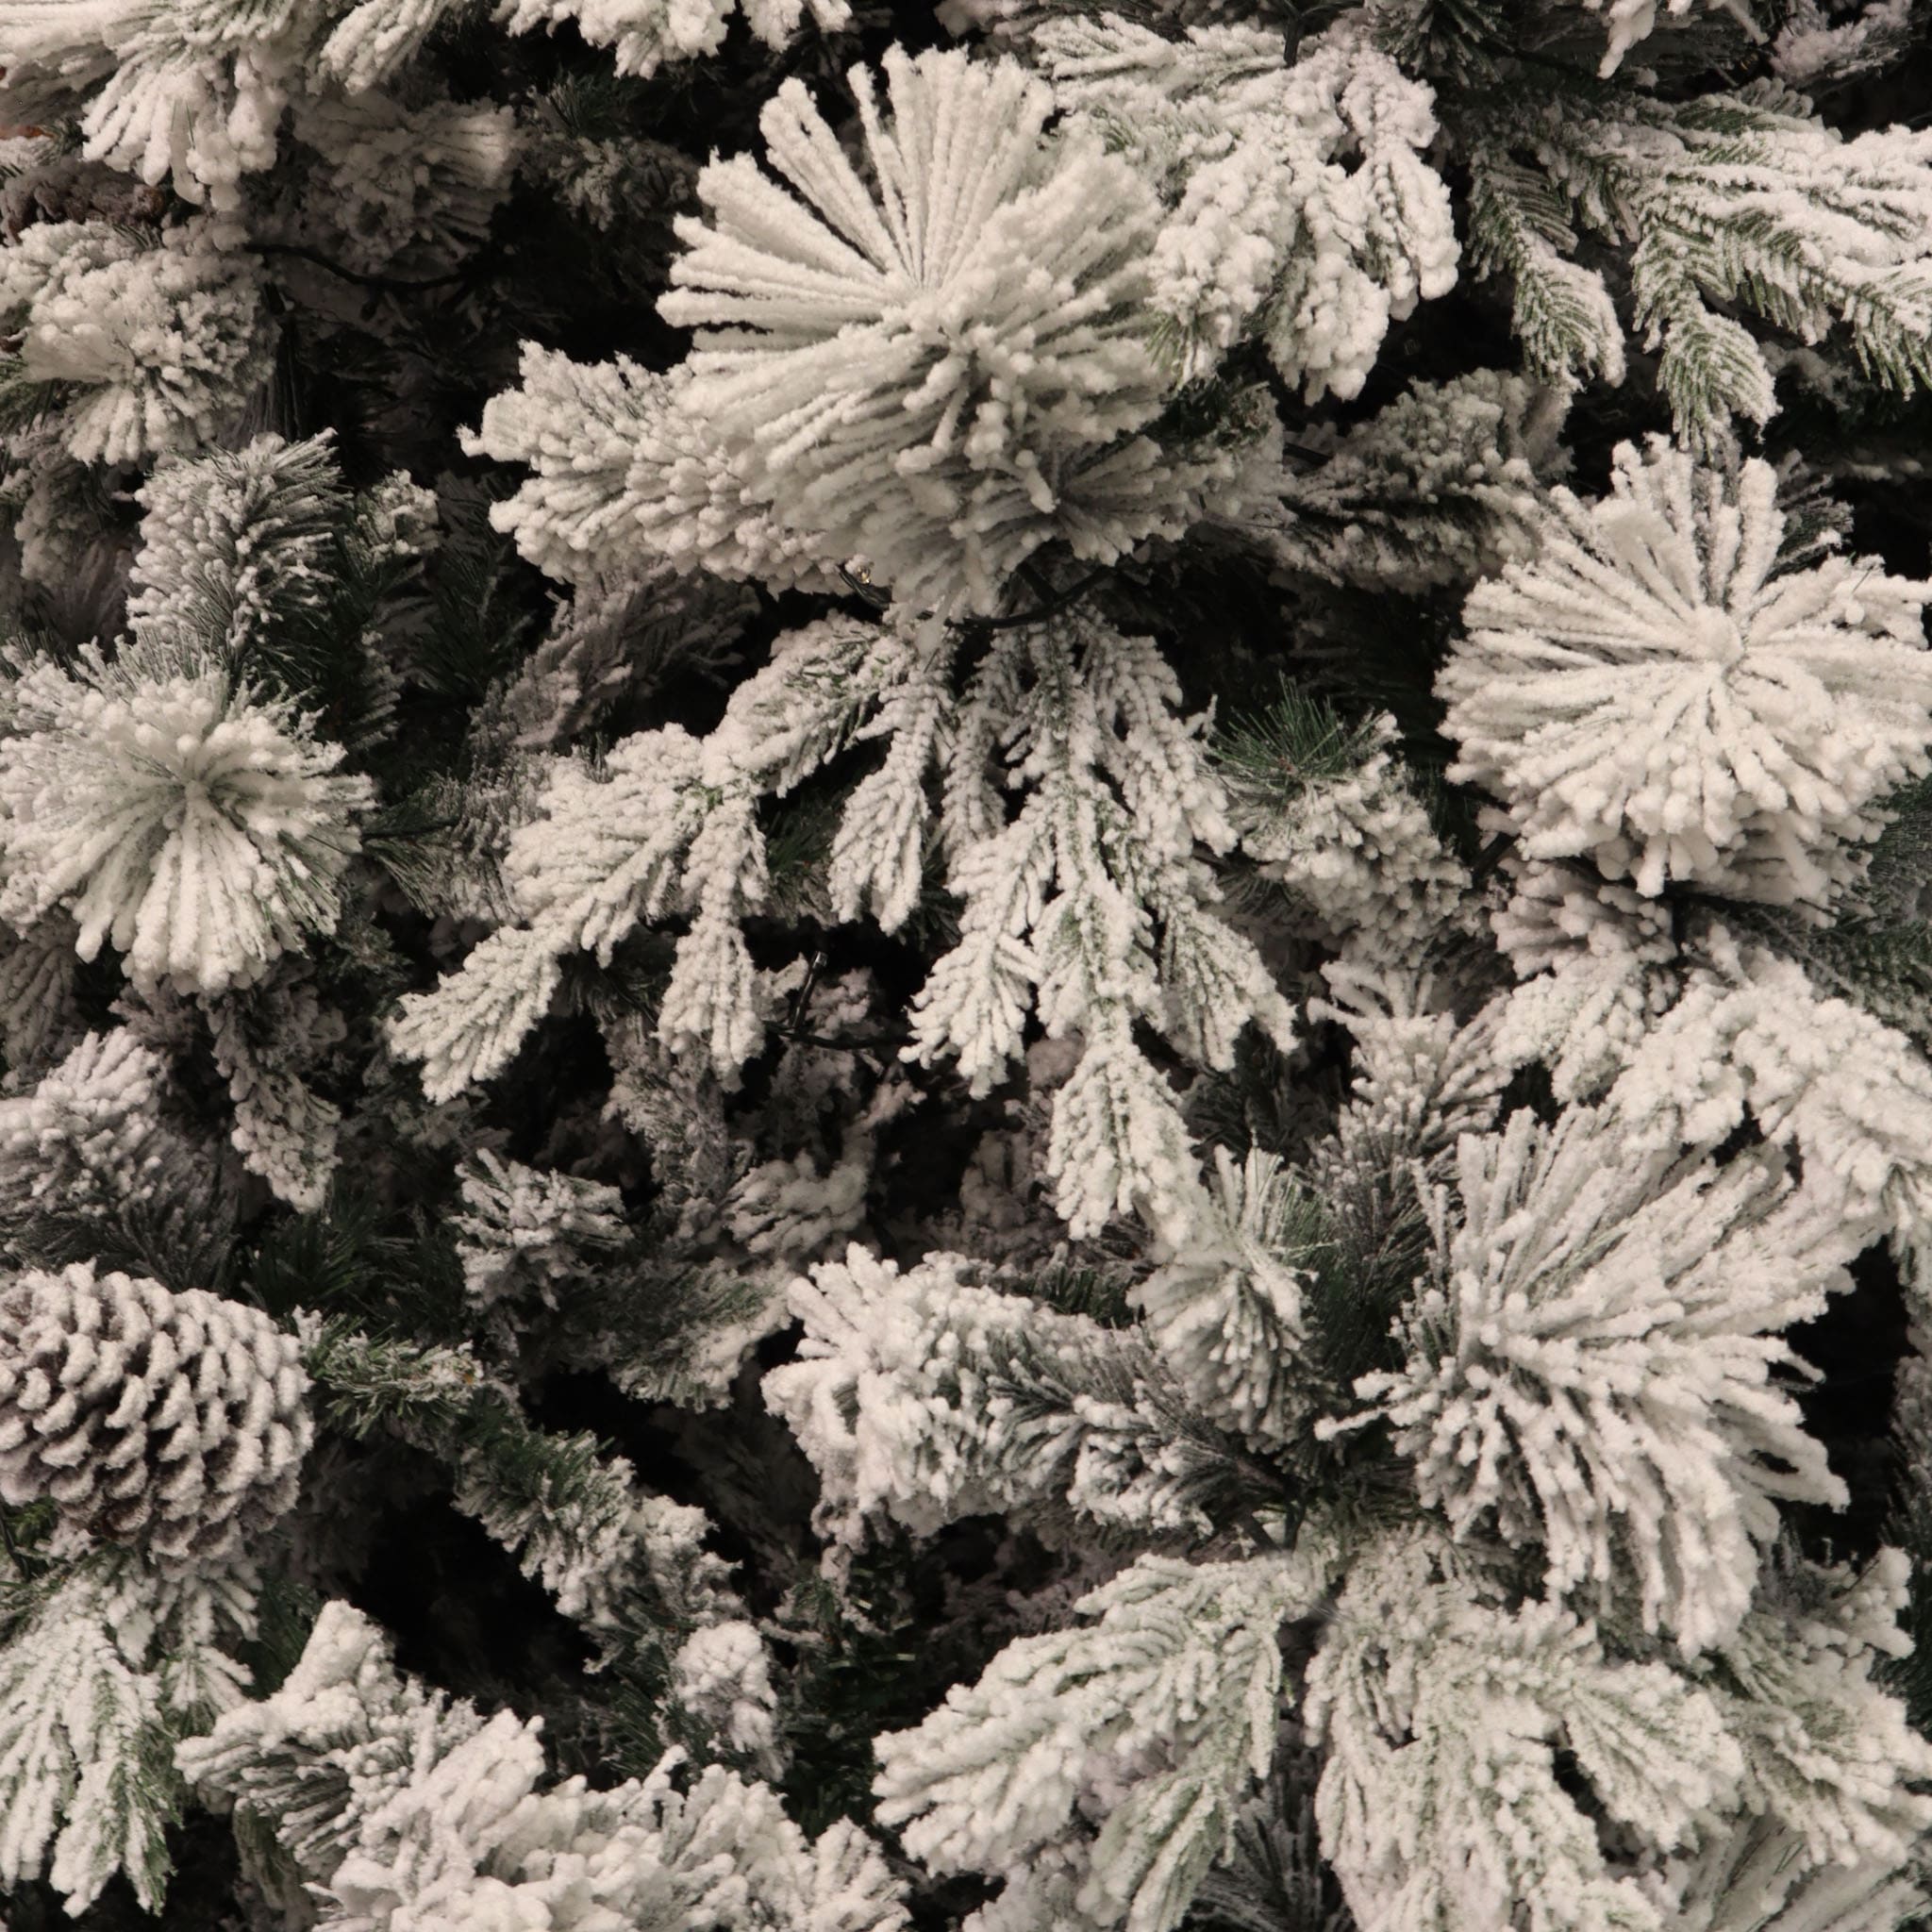 Albero di Natale Zurigo Innevato con pigne 270 cm